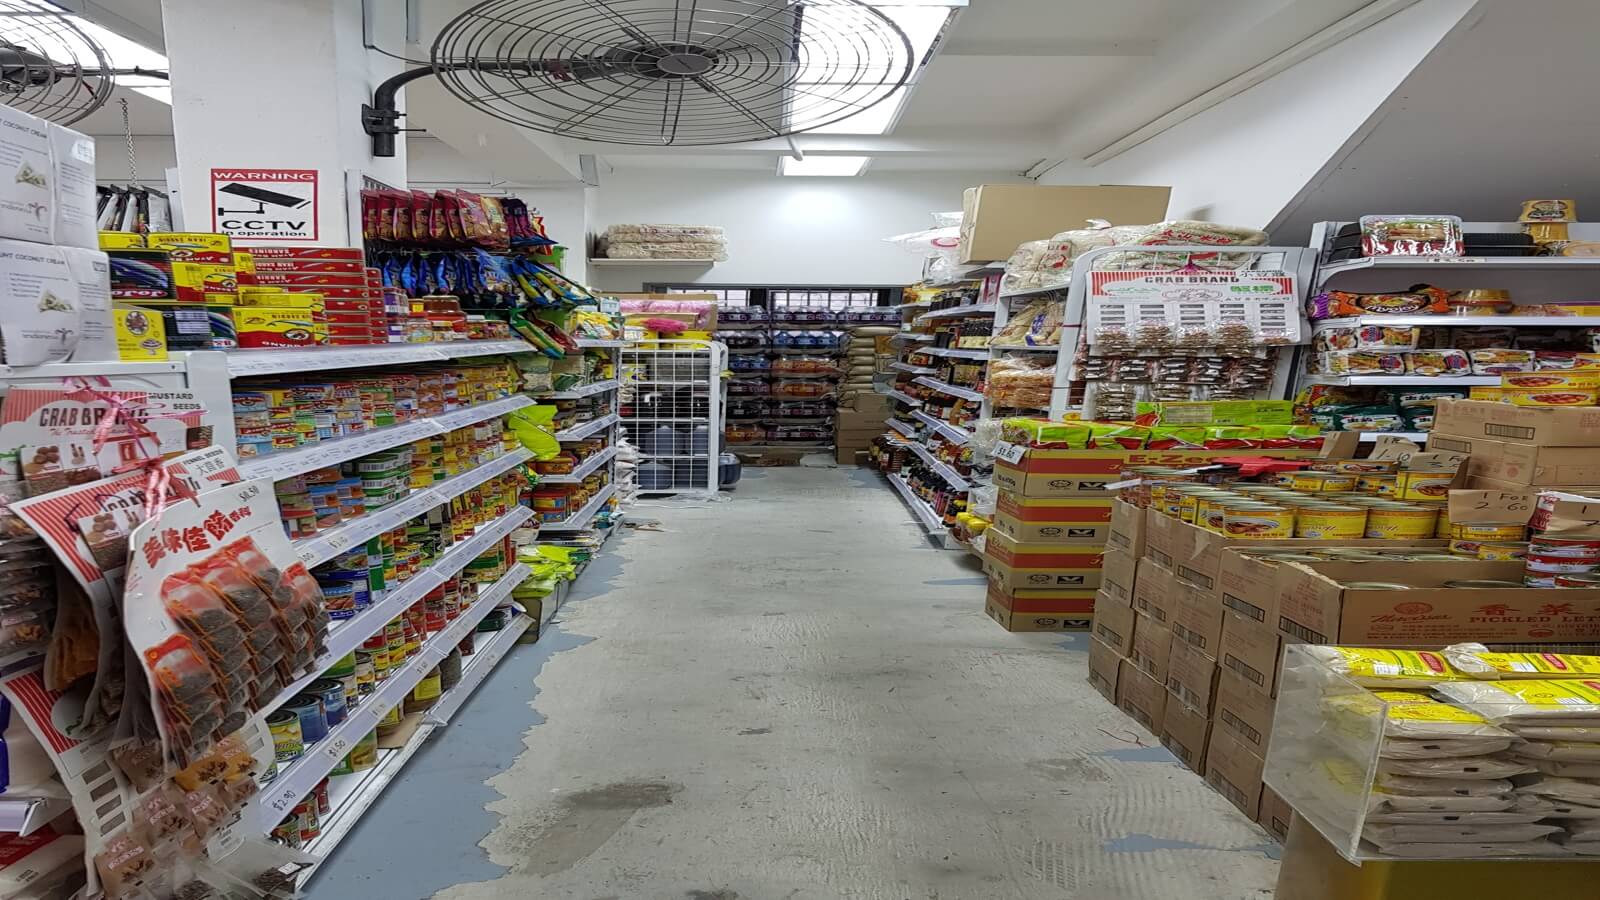 (已成交)Profitable Dried Goods Provision Shop For Sale In Good Location With High Human Traffic